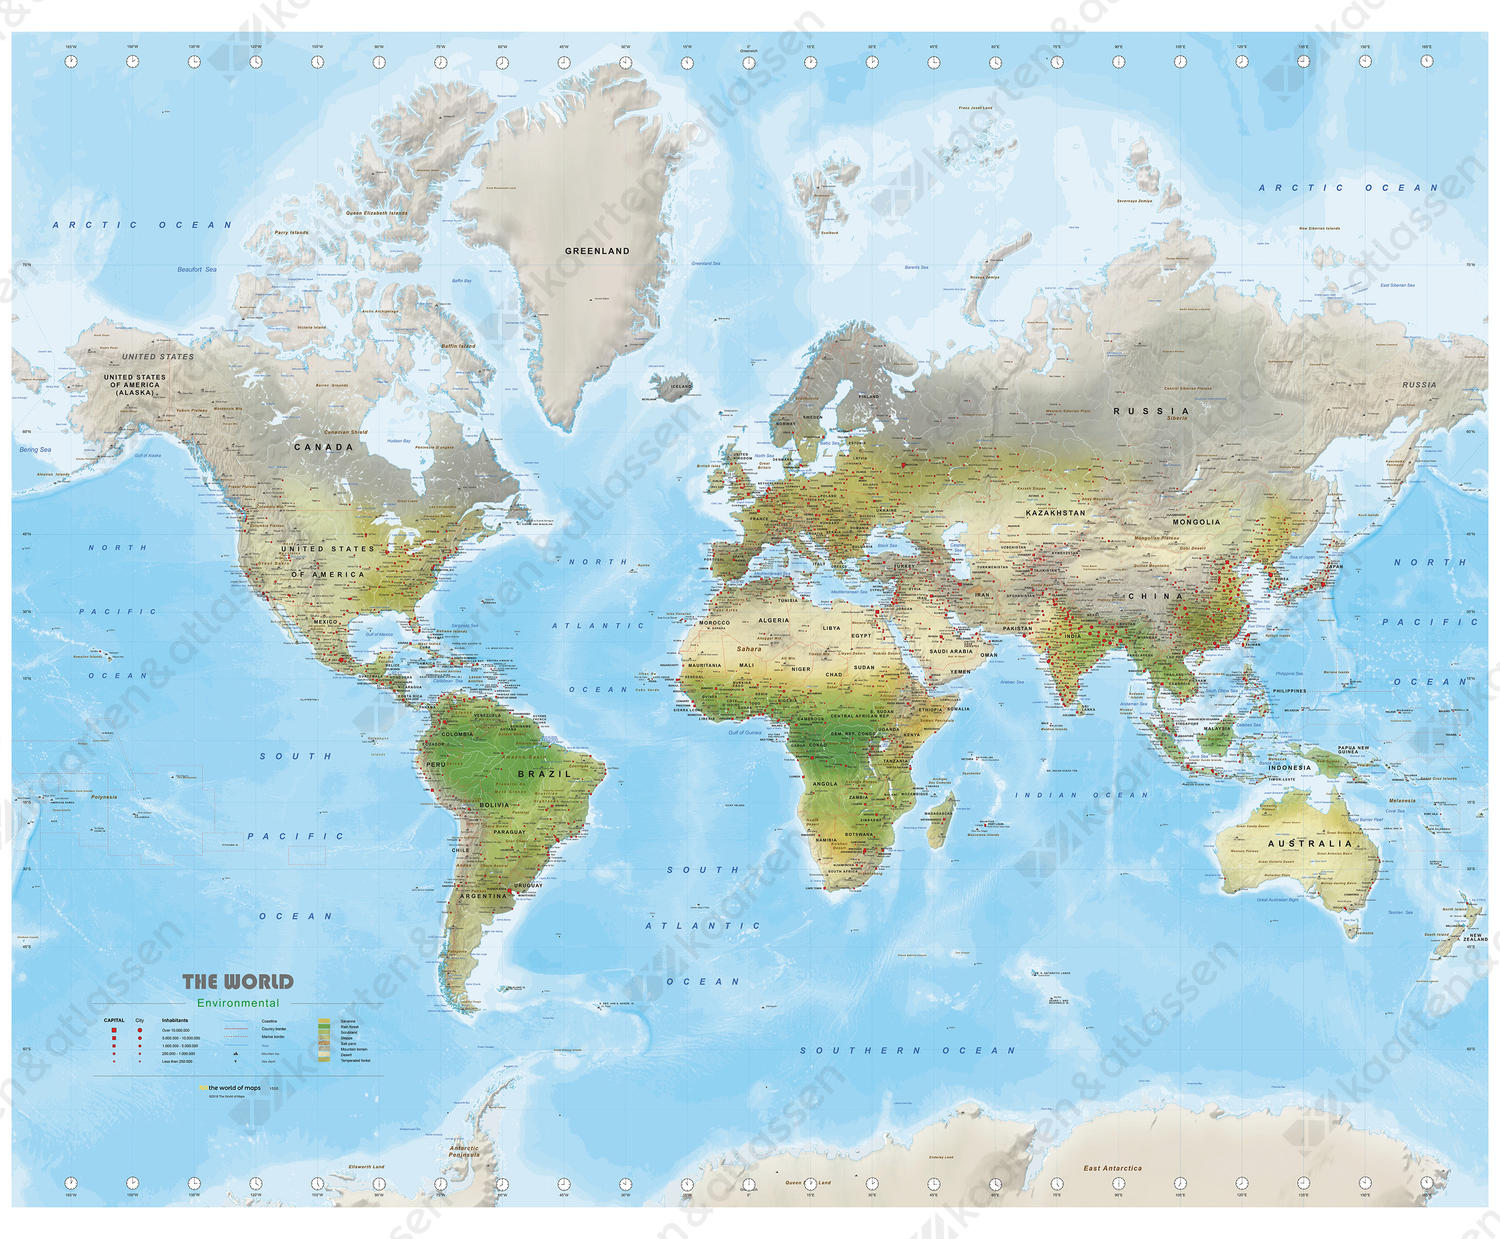 Environmental wereldkaart met veel details